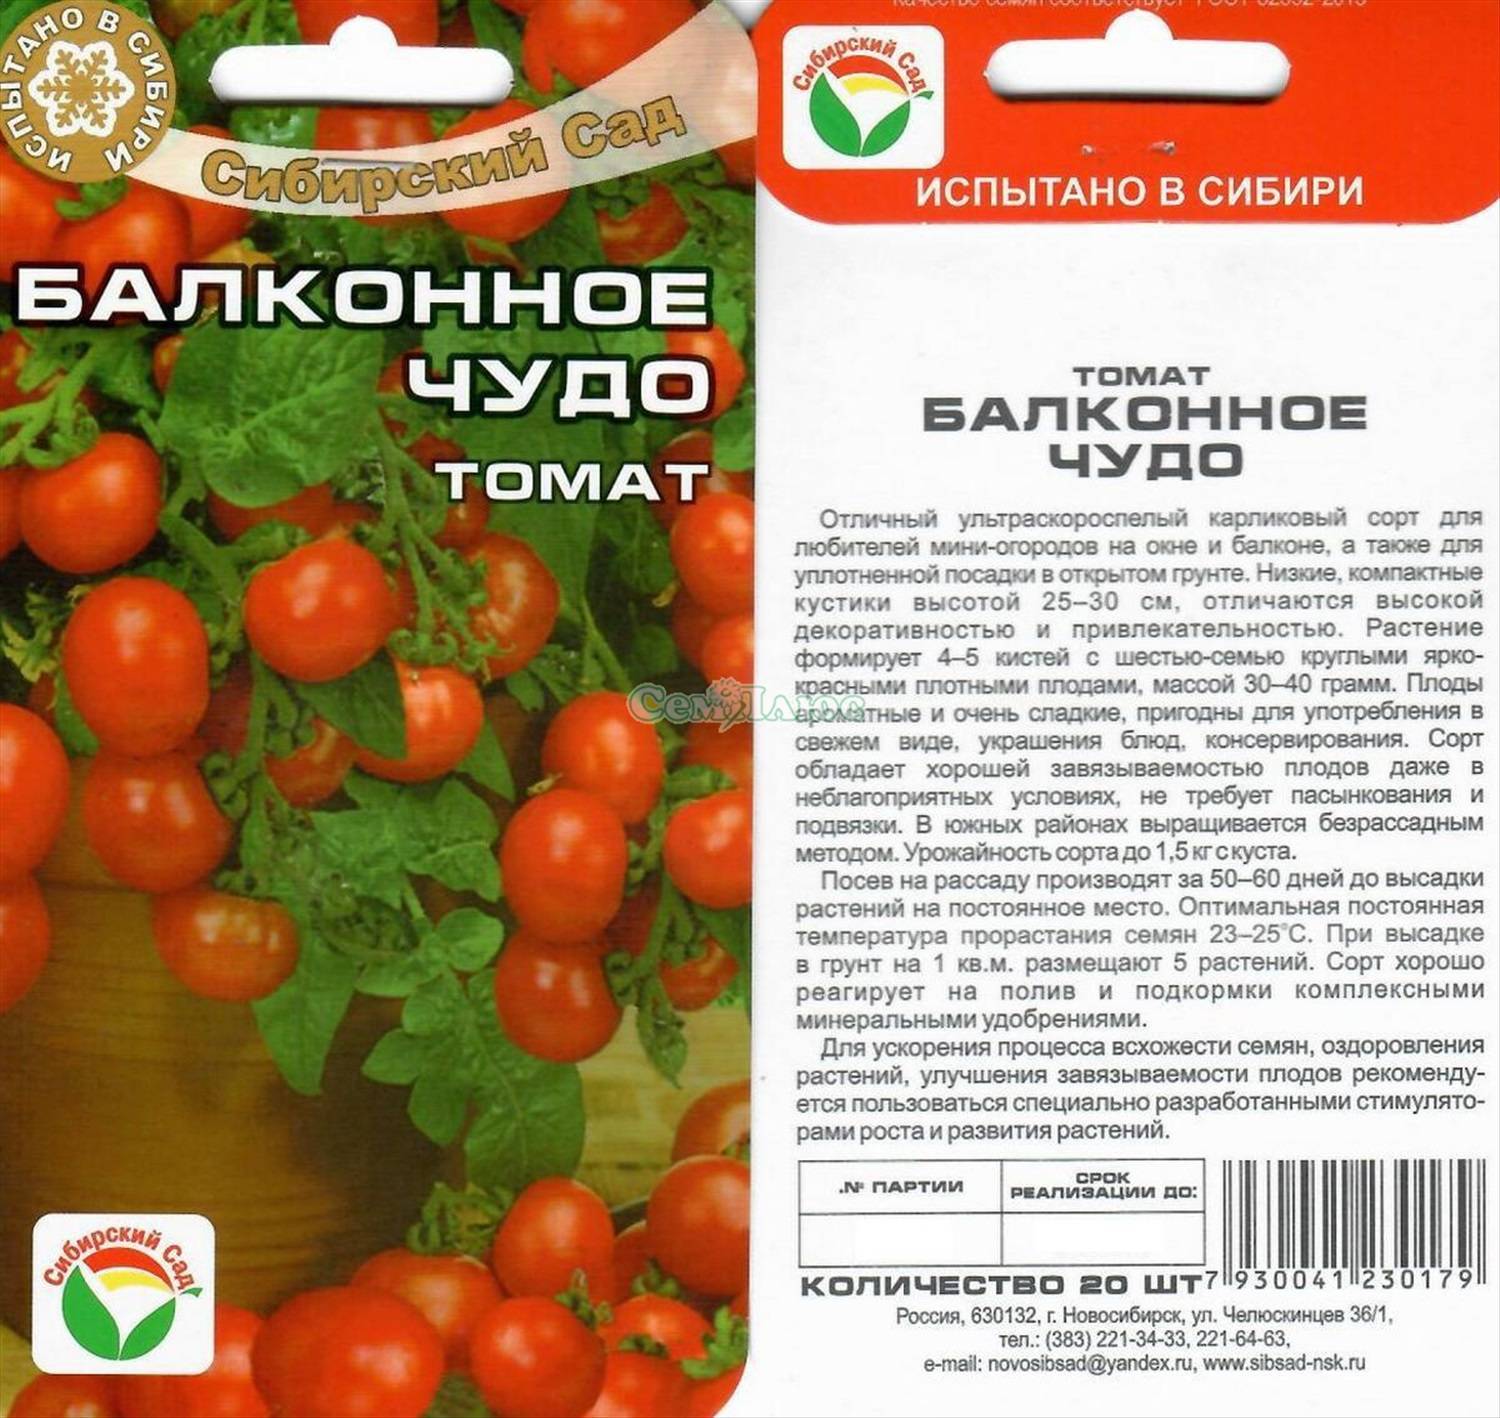 Томат василина: характеристика и описание сорта, фото помидоров, отзывы об урожайности куста